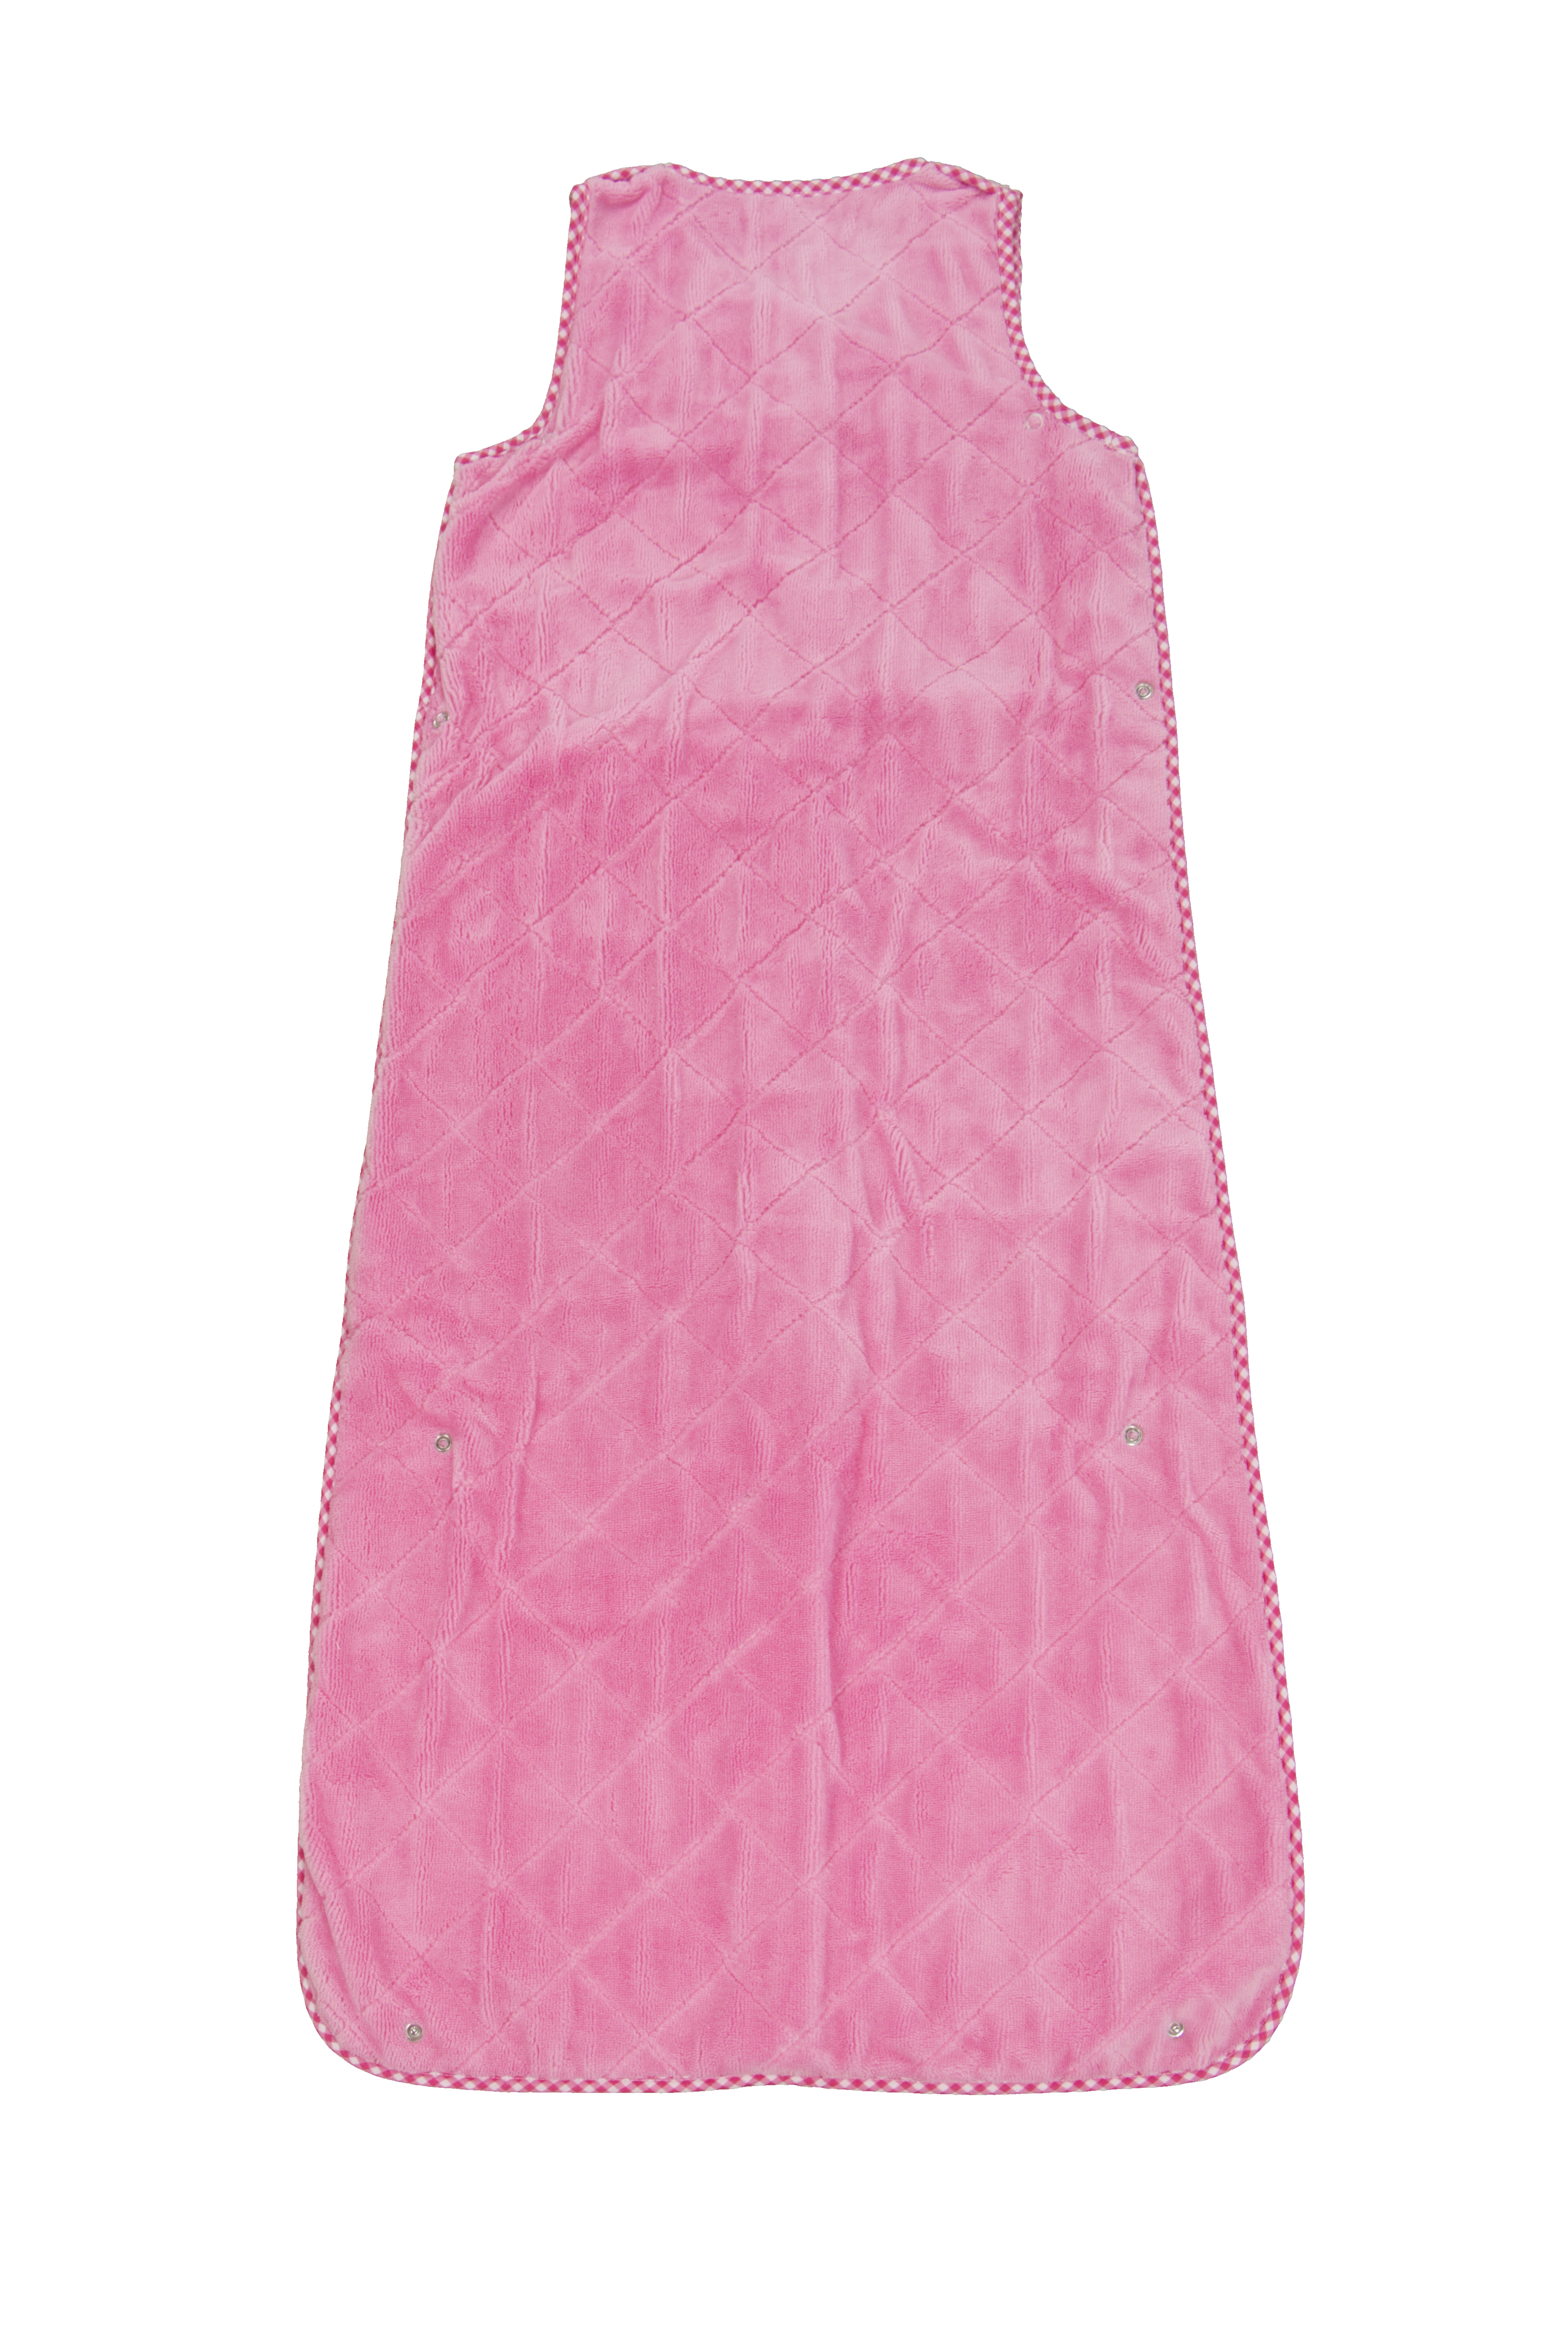 Sleeping bag Girl uni pink, 50x70-90-110 cm